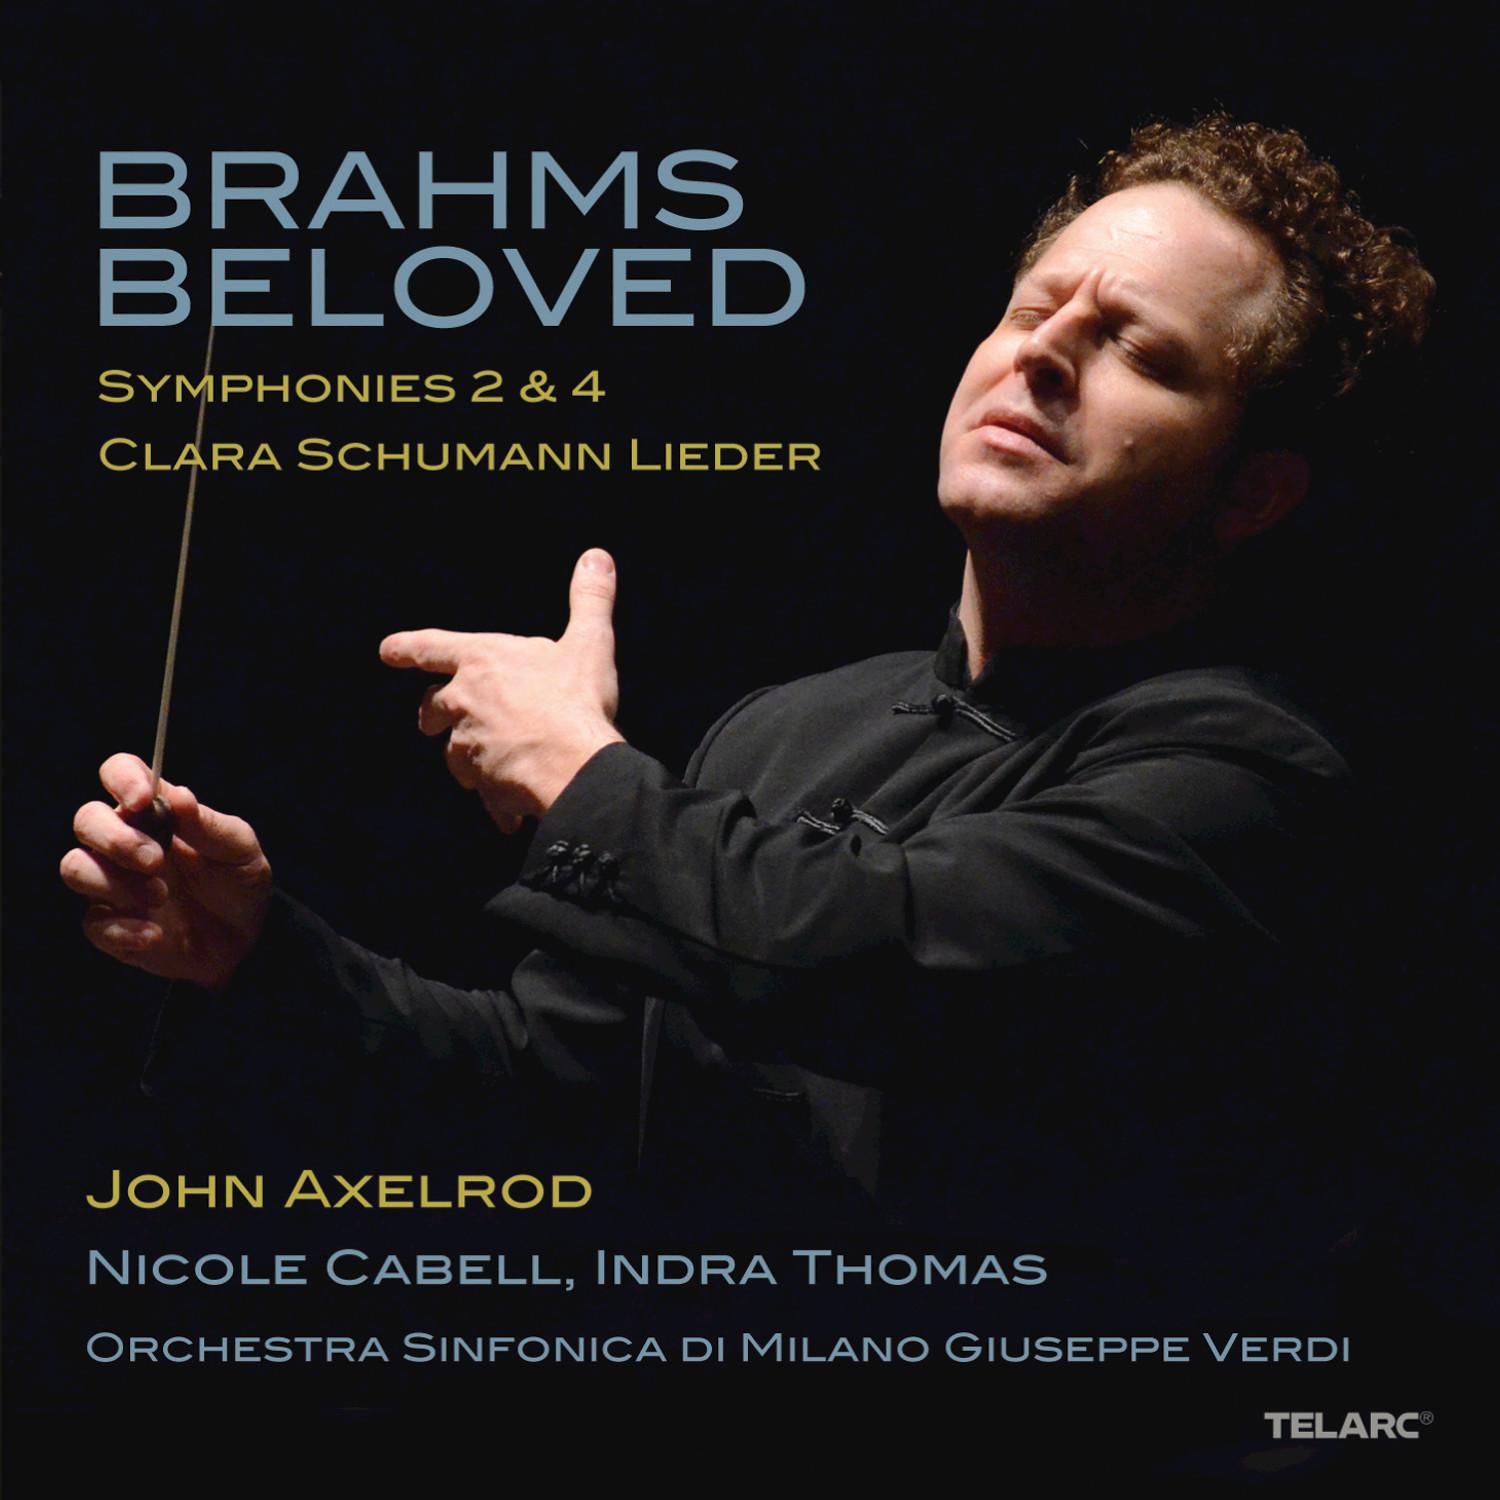 Brahms Beloved: Symphonies 2 & 4 / Clara Schumann Lieder